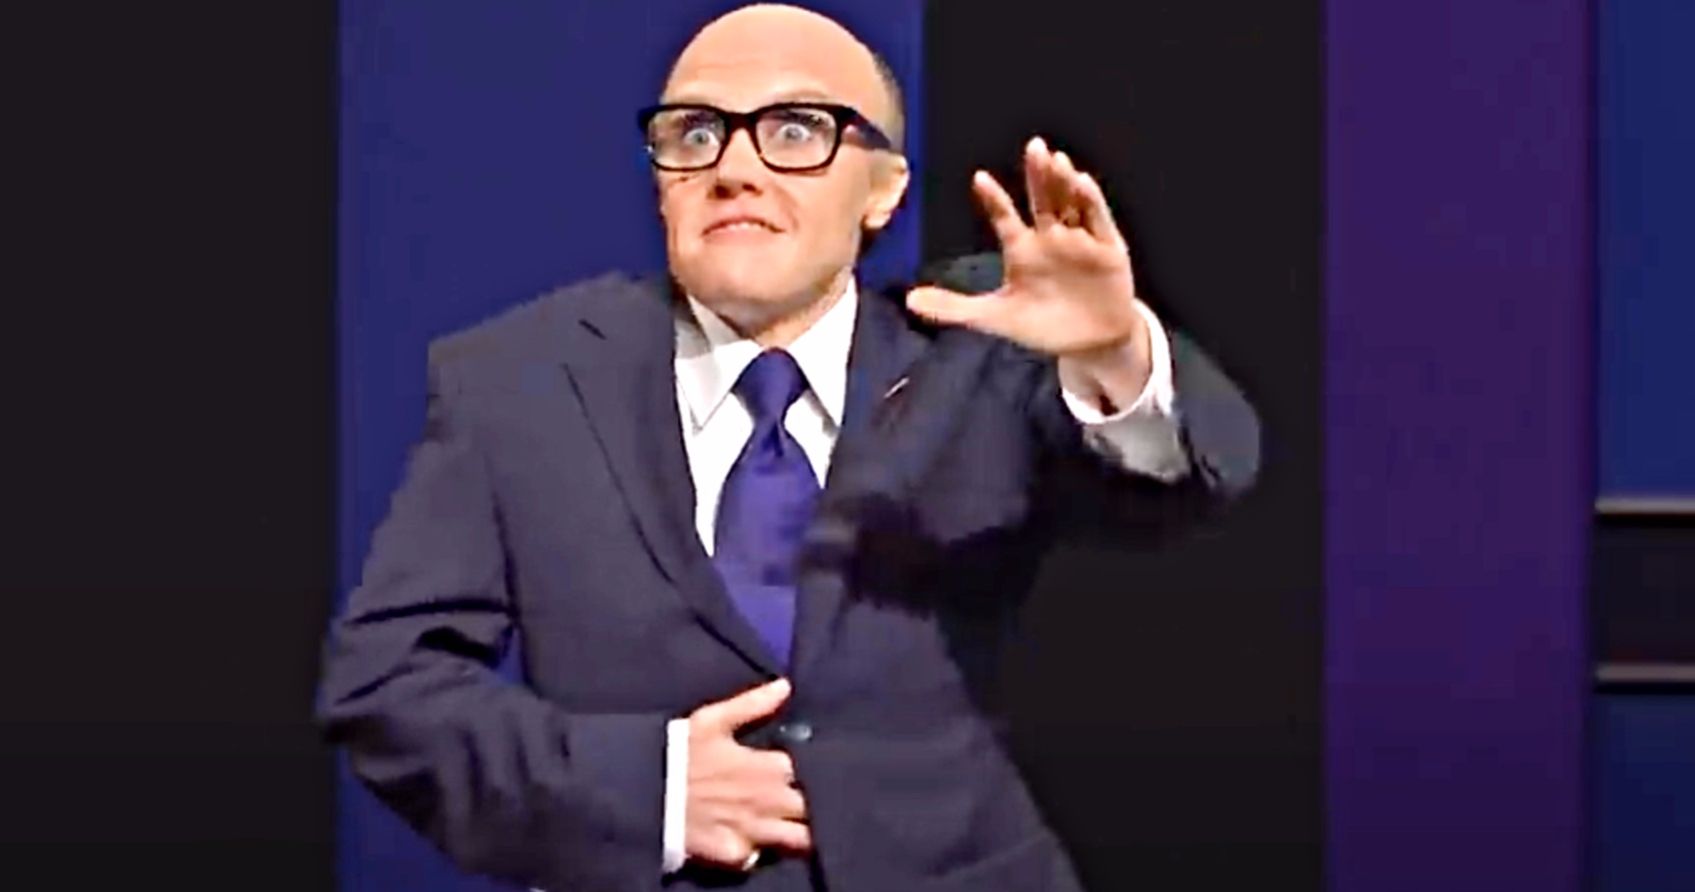 Saturday Night Live Cold Open Spoofs Rudy Giuliani's Borat 2 Controversy